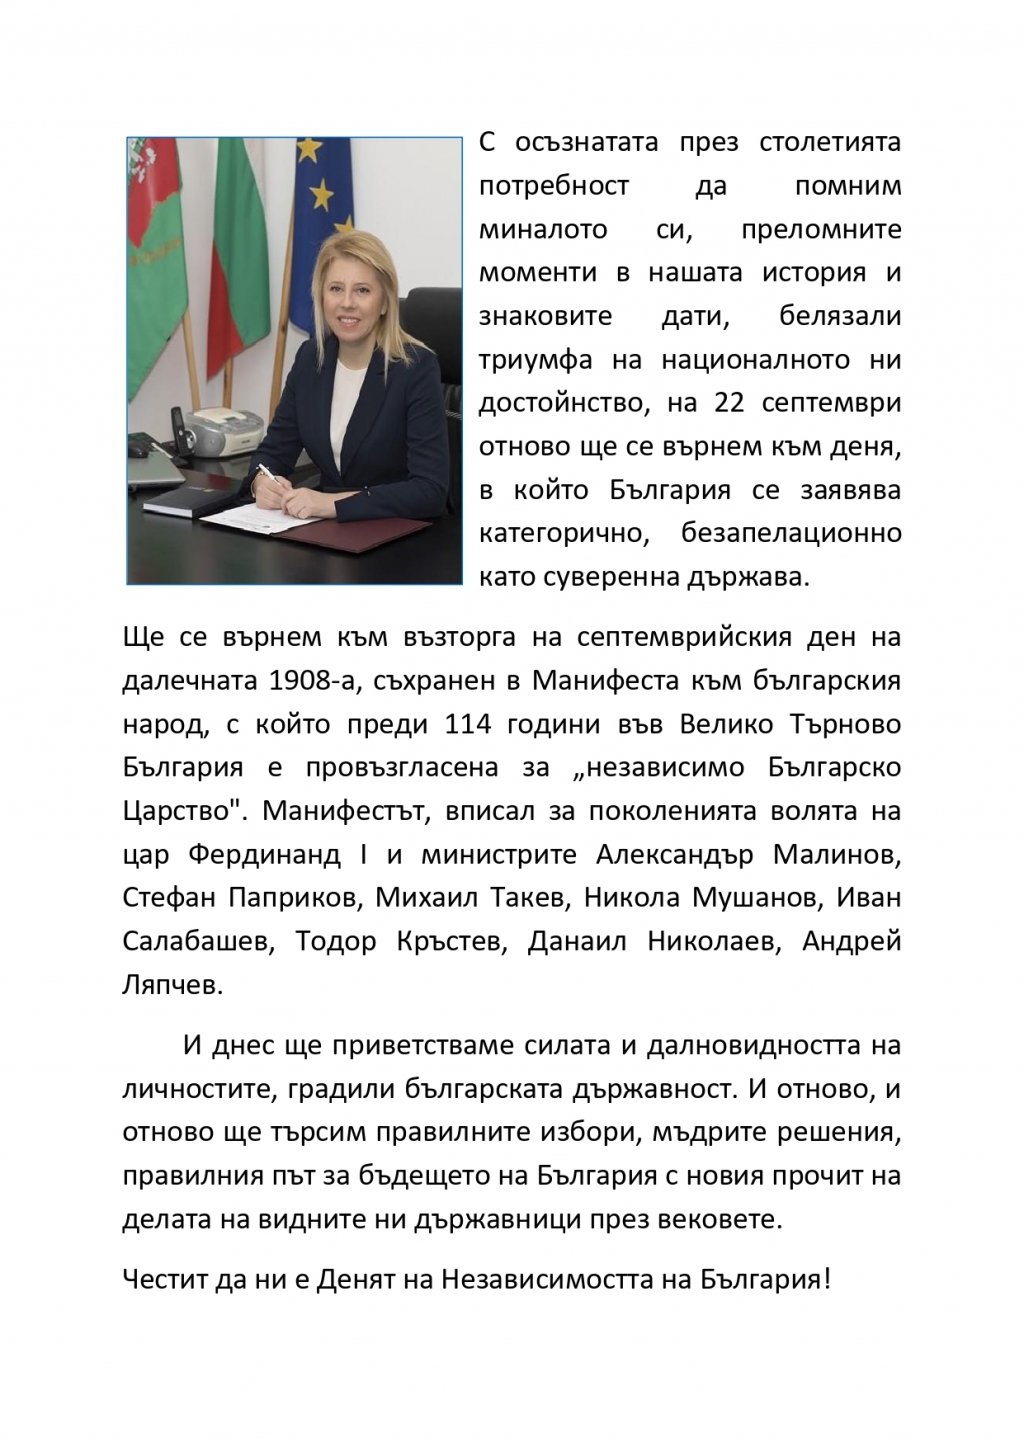 Кметът Соня Георгиева: Честит да ни е Денят на Независимостта на България!